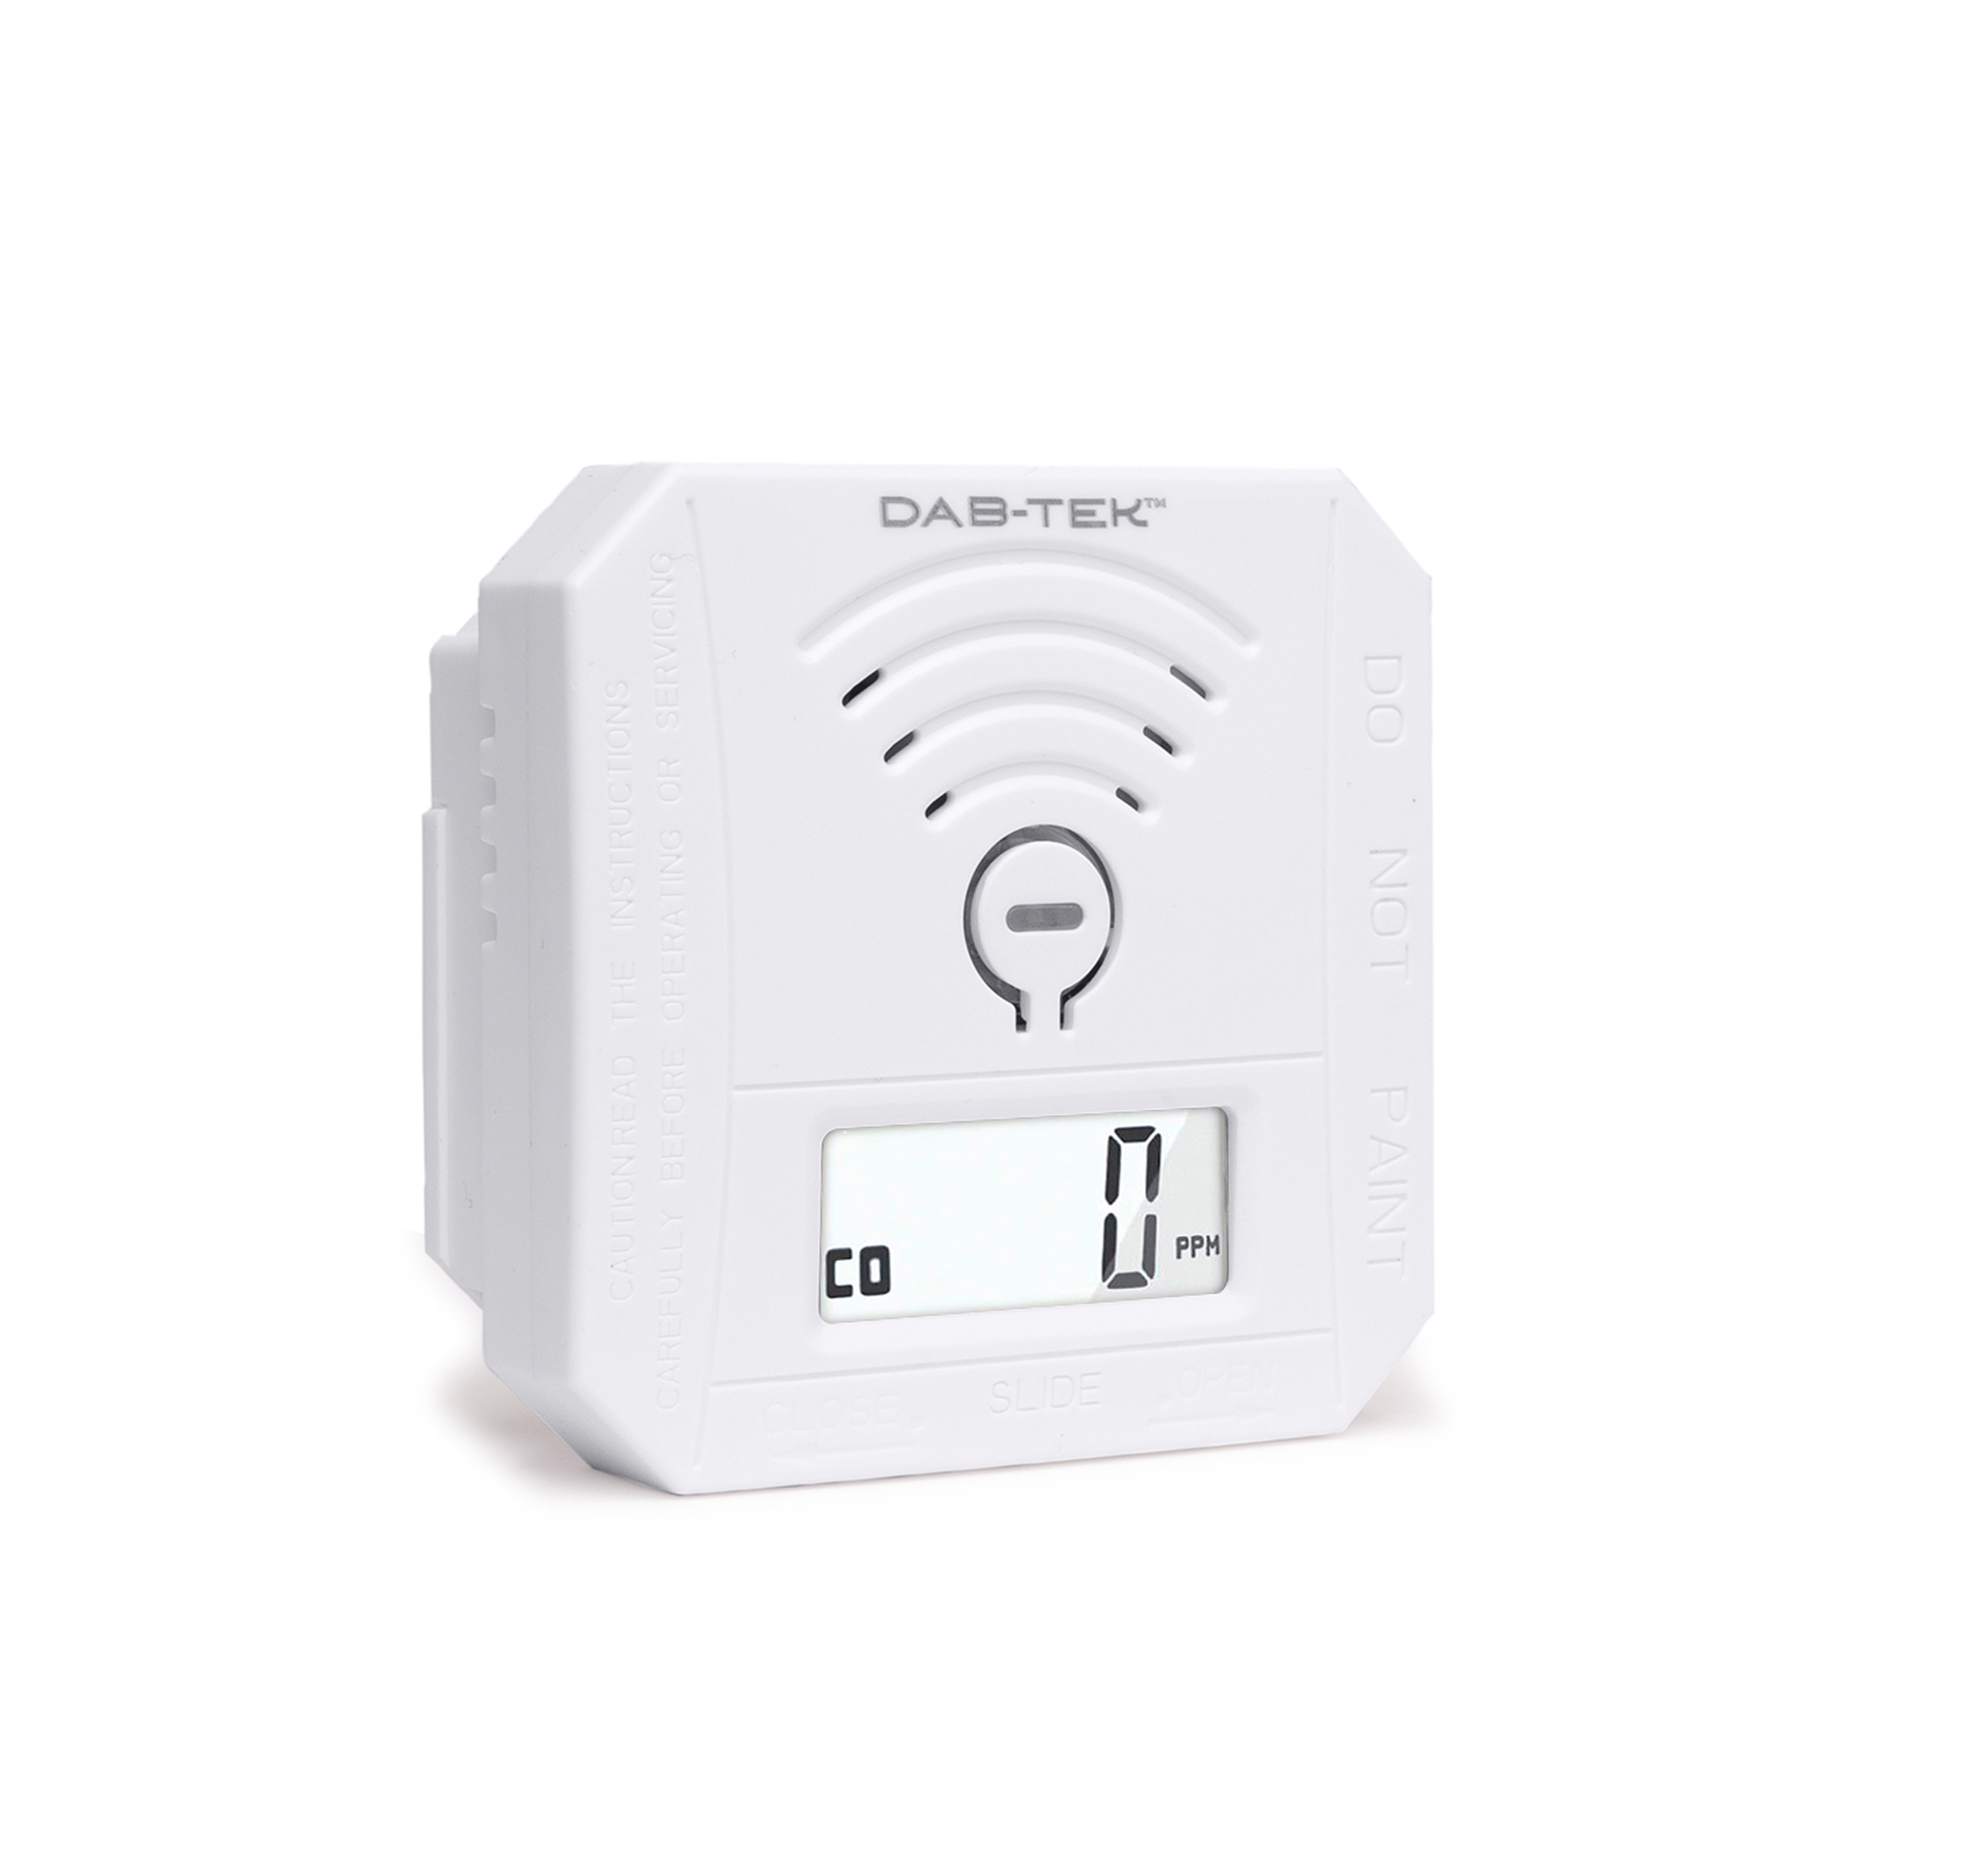 DAB-TEK: Portable Carbon Monoxide Detector for Travel